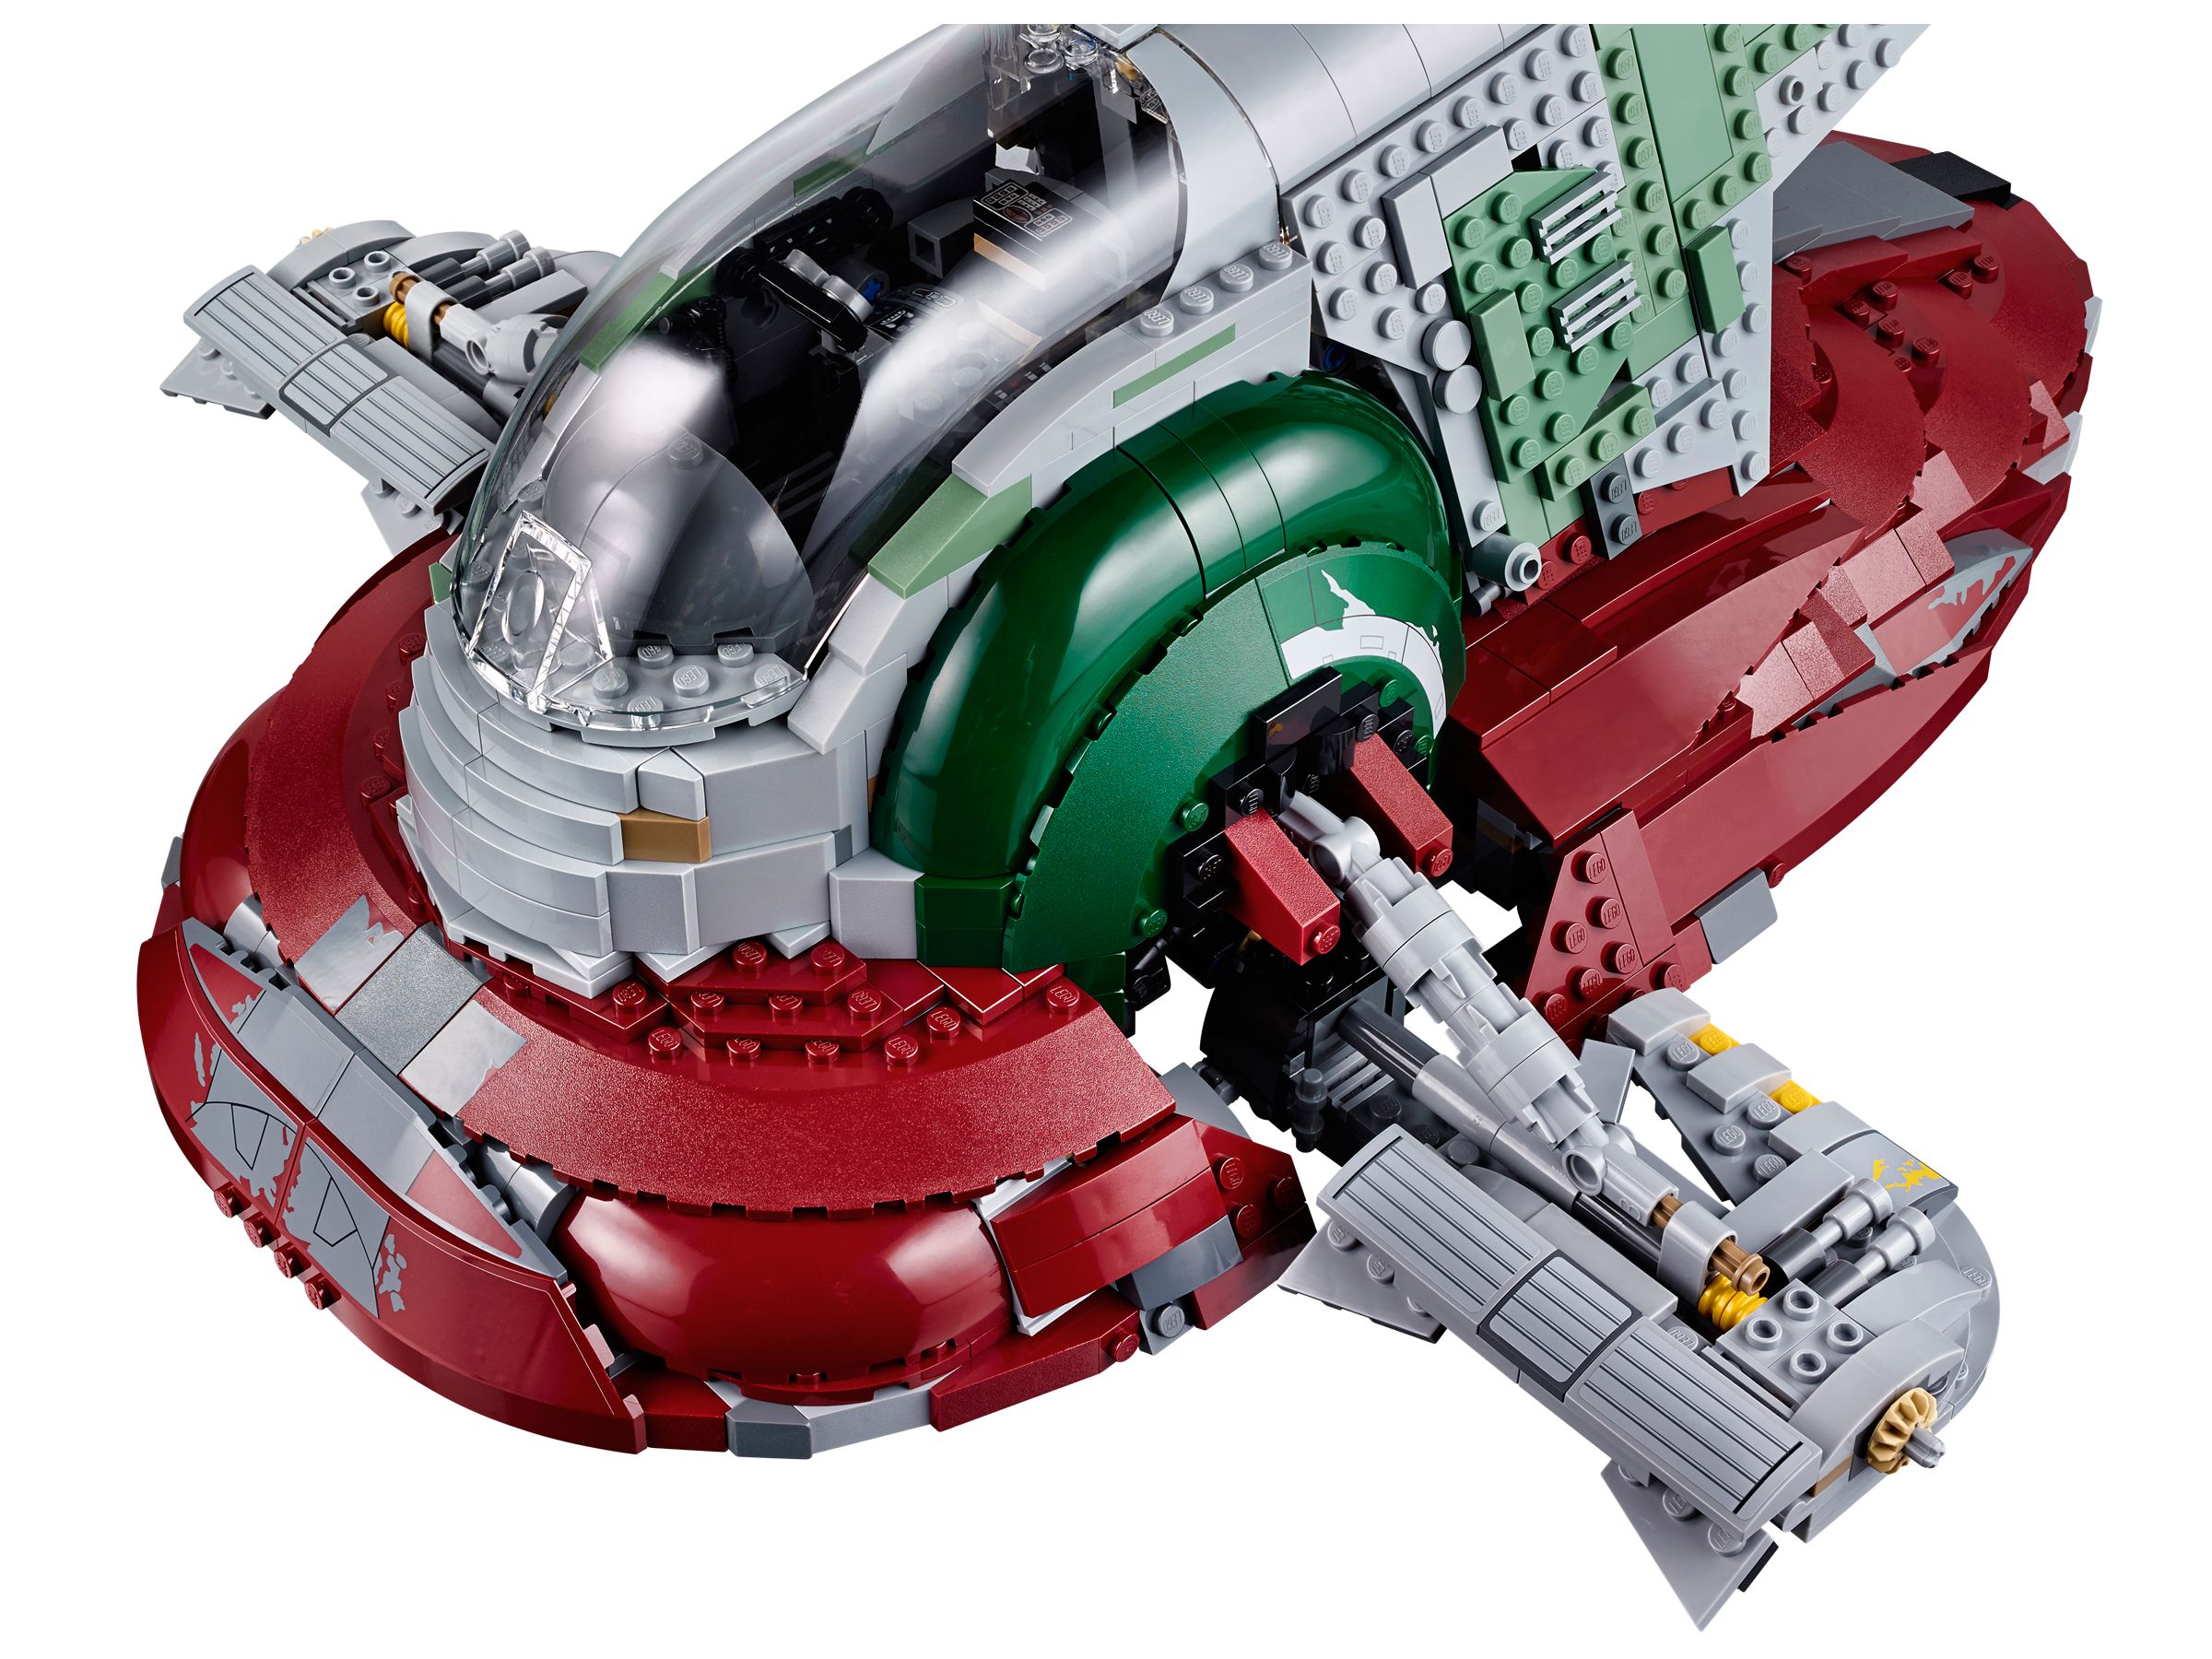 LEGO Star Wars 75060 UCS Slave I LEGO_75060_alt8.jpg